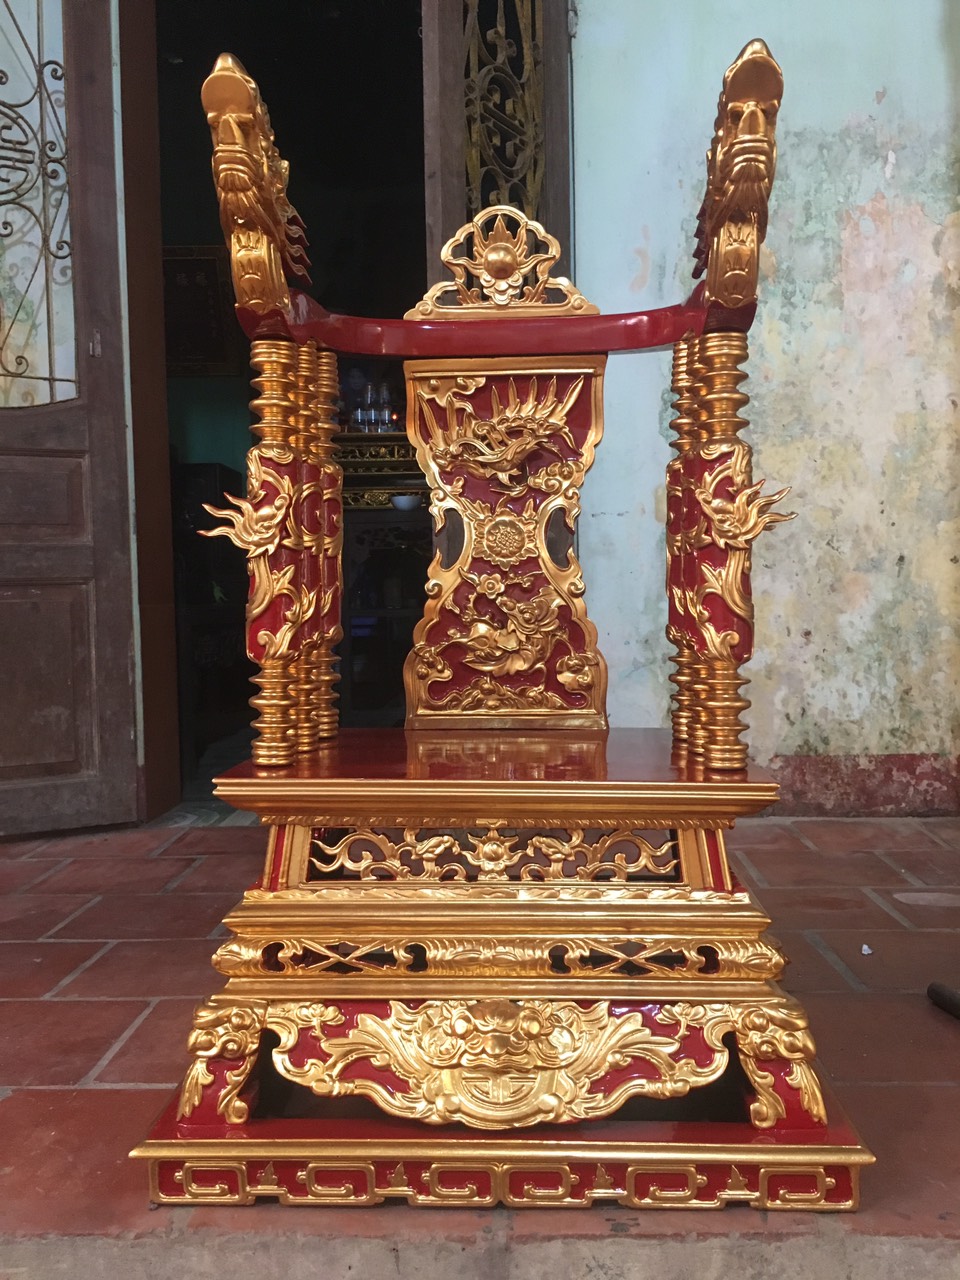 Ý nghĩa của ngai thờ trong tín ngưỡng thờ cúng của người Việt - cách bày đồ thờ cúng